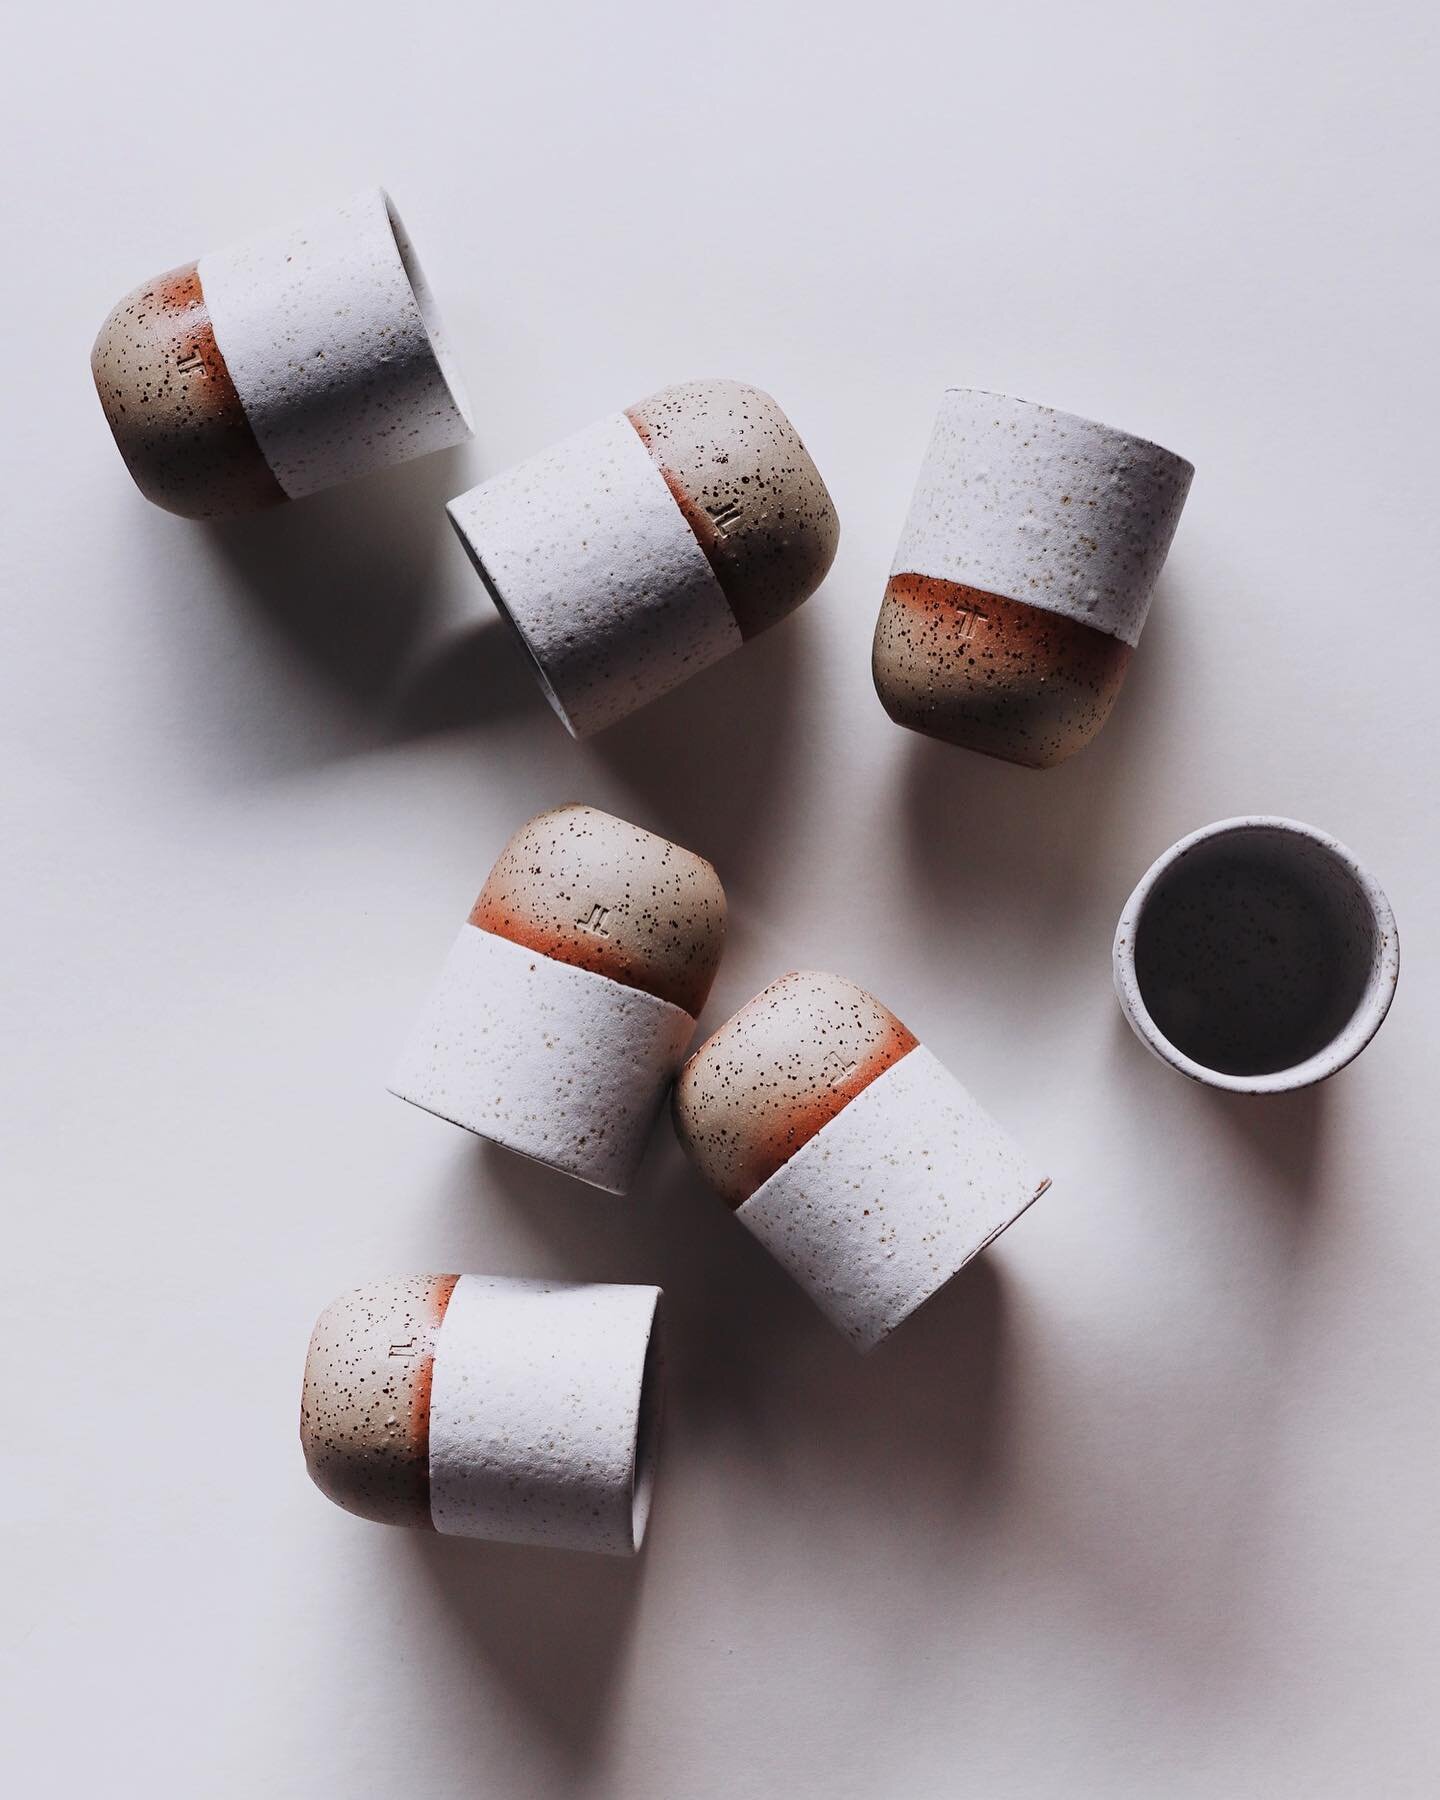 Roh und matt, wenn auch nicht glanzlos.

#keramik #pottery #pottersofinstagram #modernceramics #ceramics #notonkeramik #tablewaredesign #makersgonnamake #design #minimalism #modernekeramik #ceramicart #ceramicdesign #hygge #sustainableliving #contemp